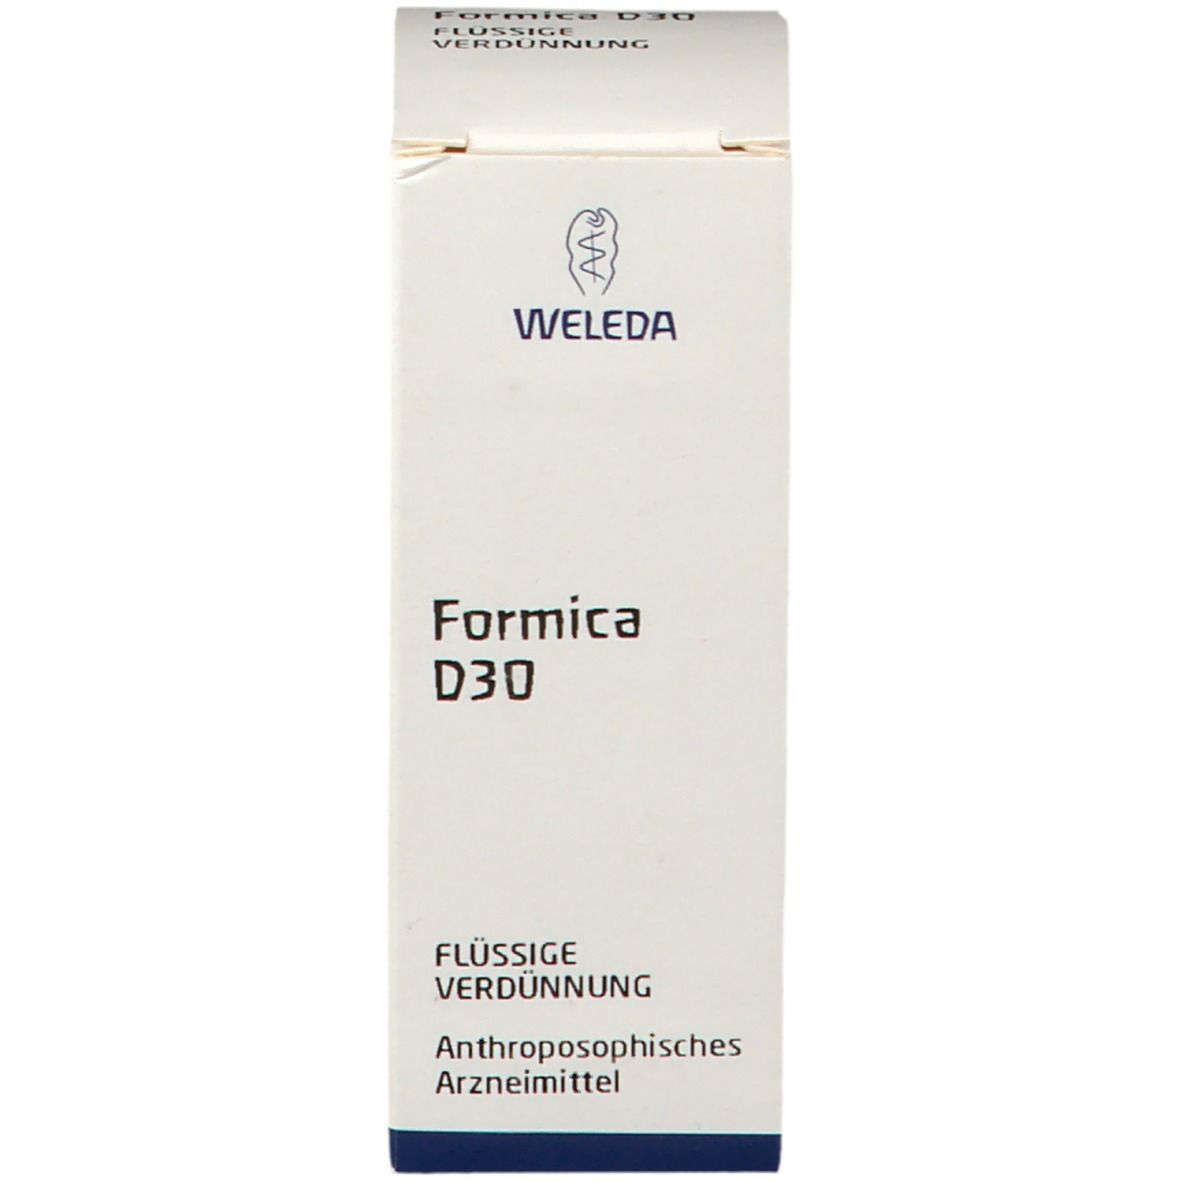 Formica D 30